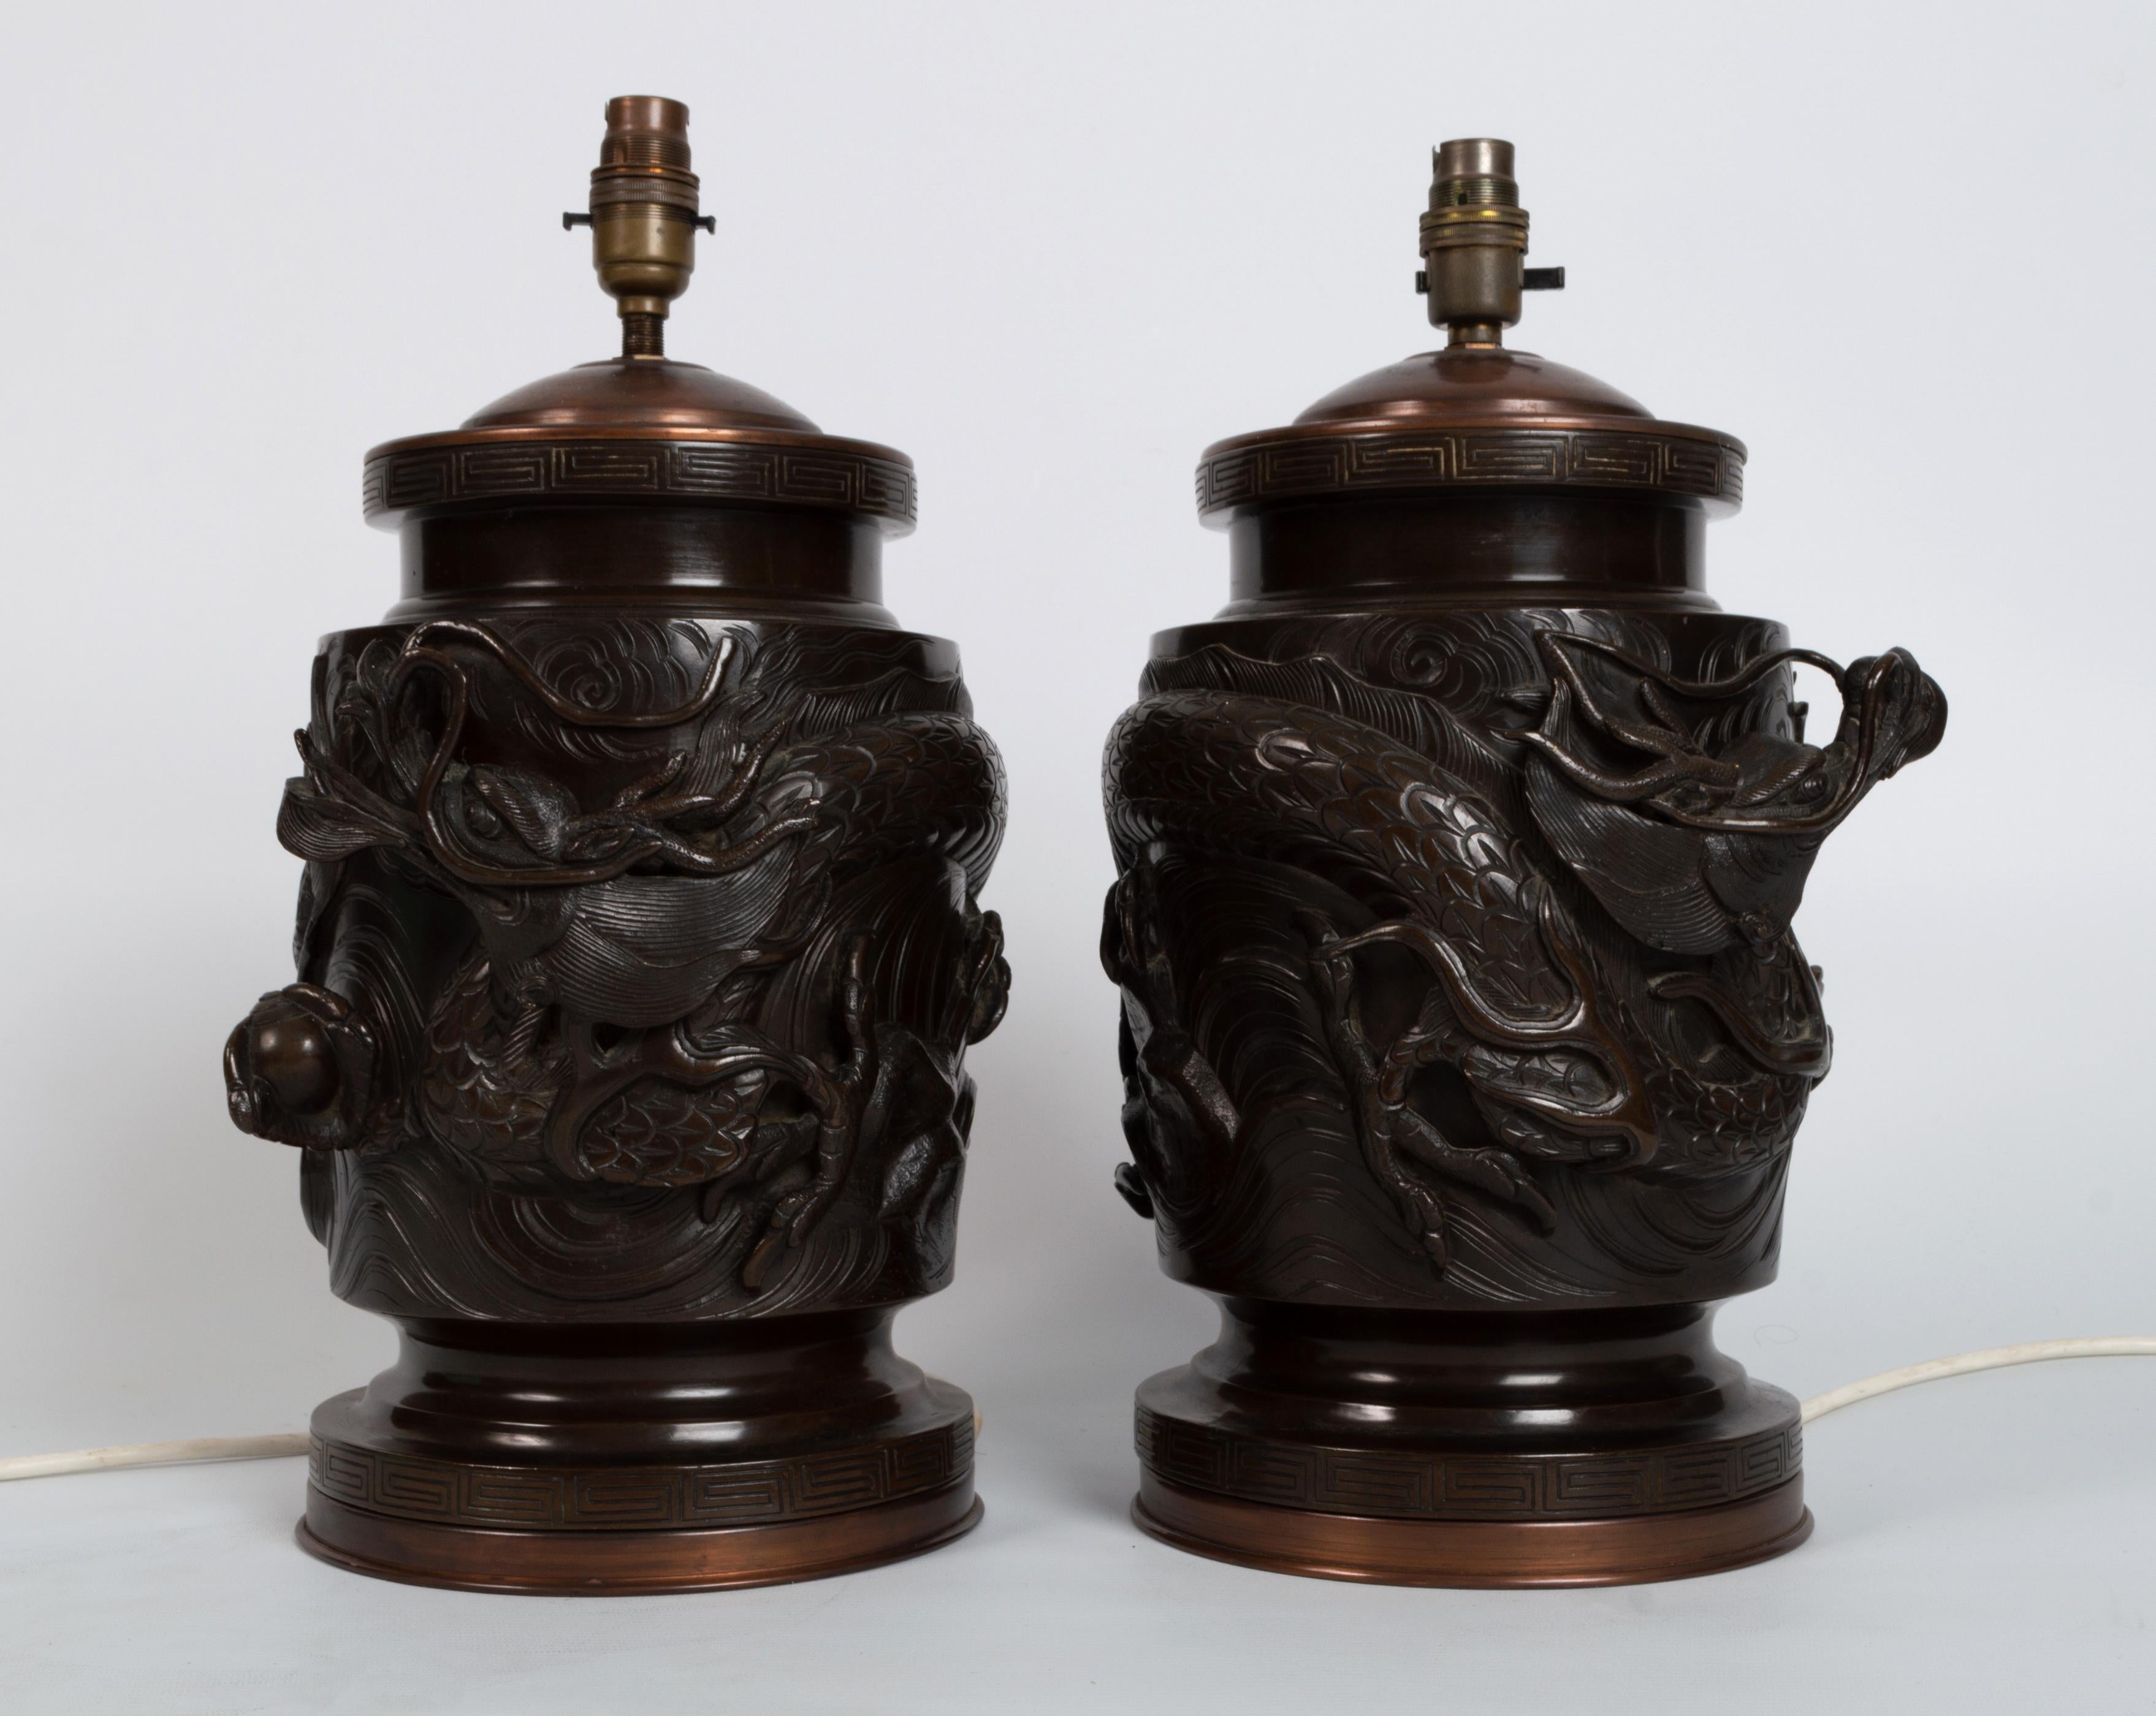 Paire de lampes de table anciennes en bronze patiné du 19ème siècle de la période Meiji.

Paire de vases japonais en bronze patiné de forme cylindrique, représentant des créatures mythologiques parmi des prunus, motif de clé grecque sur le bord et